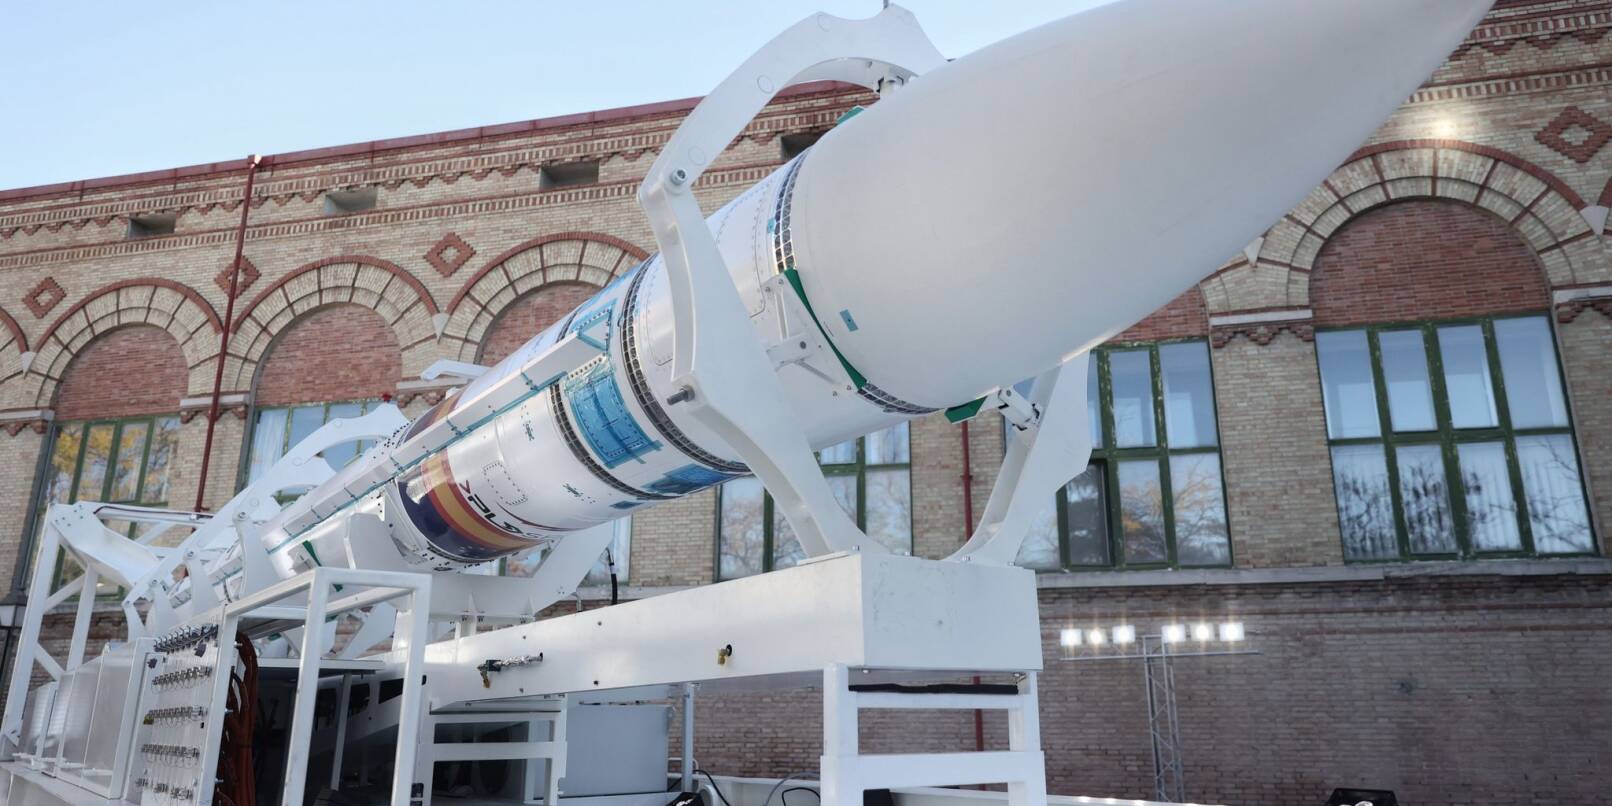 Die Träger-Rakete «Miura 1» wird auf der Esplanade des Nationalen Museums für Naturwissenschaften in Madrid präsentiert.